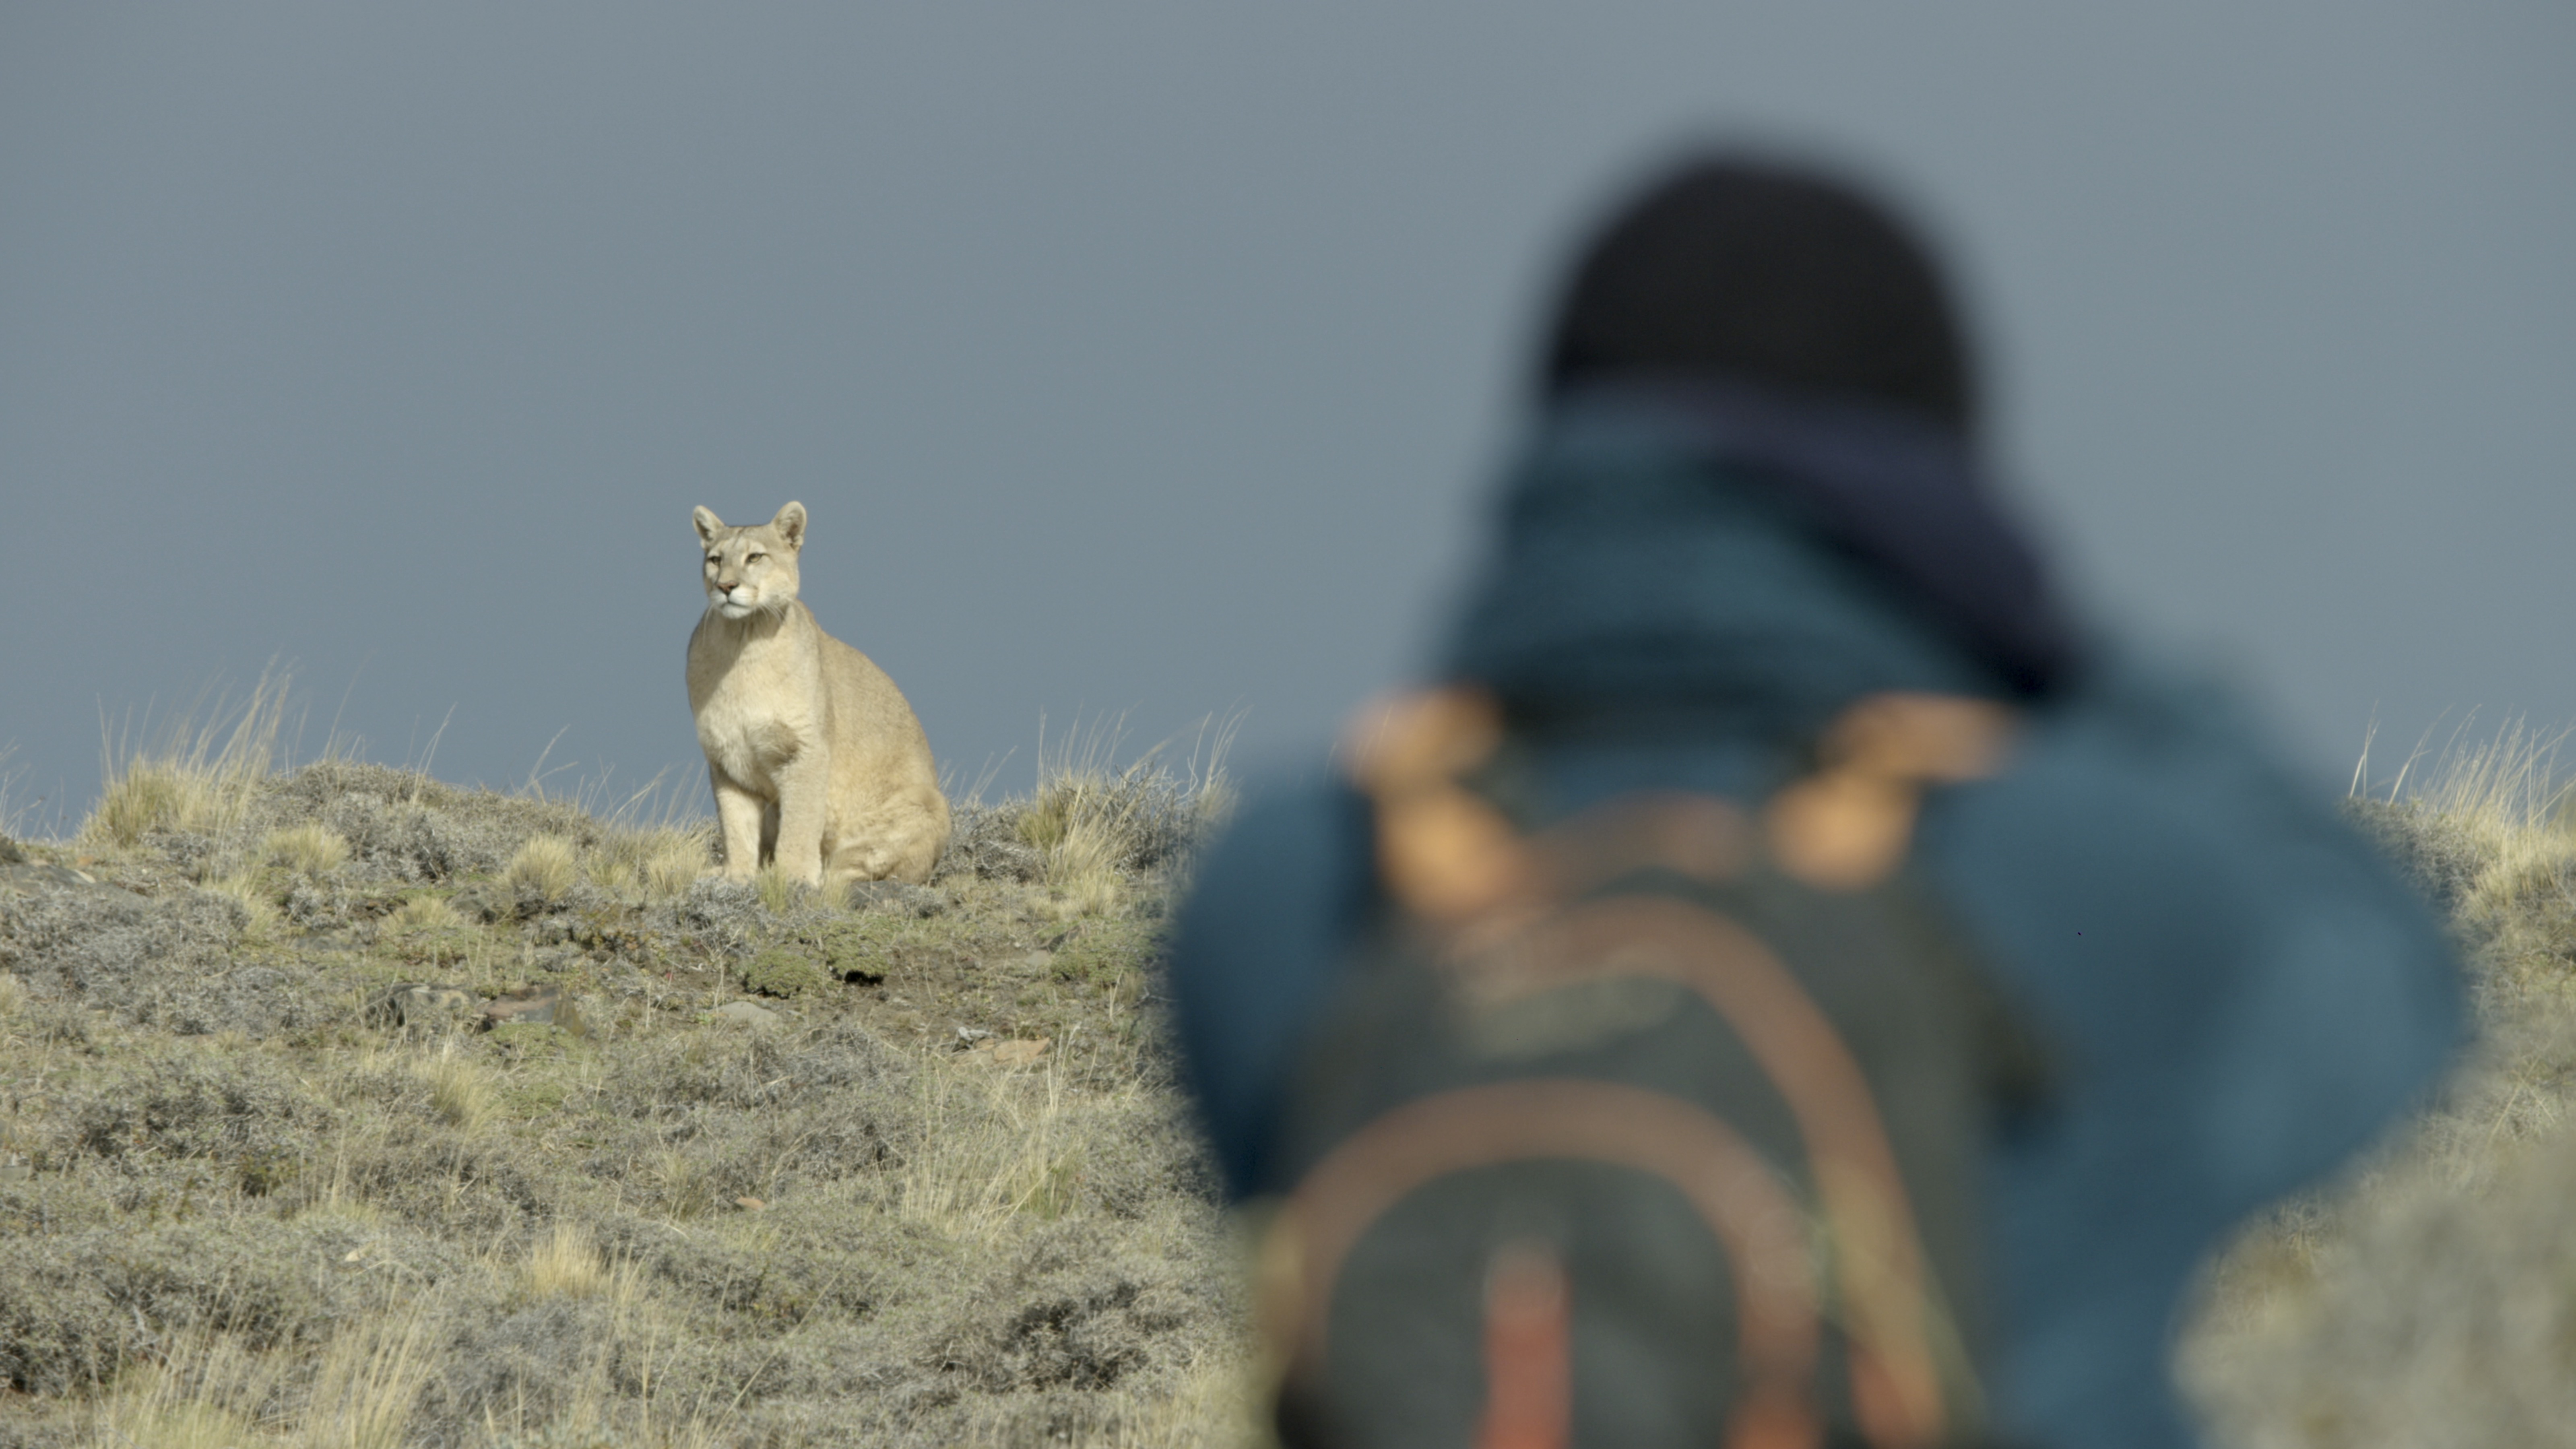 La vida secreta de los pumas el primer vuelo de un así se grabó el documental narrado por Obama en la Patagonia | Cultura | EL PAÍS